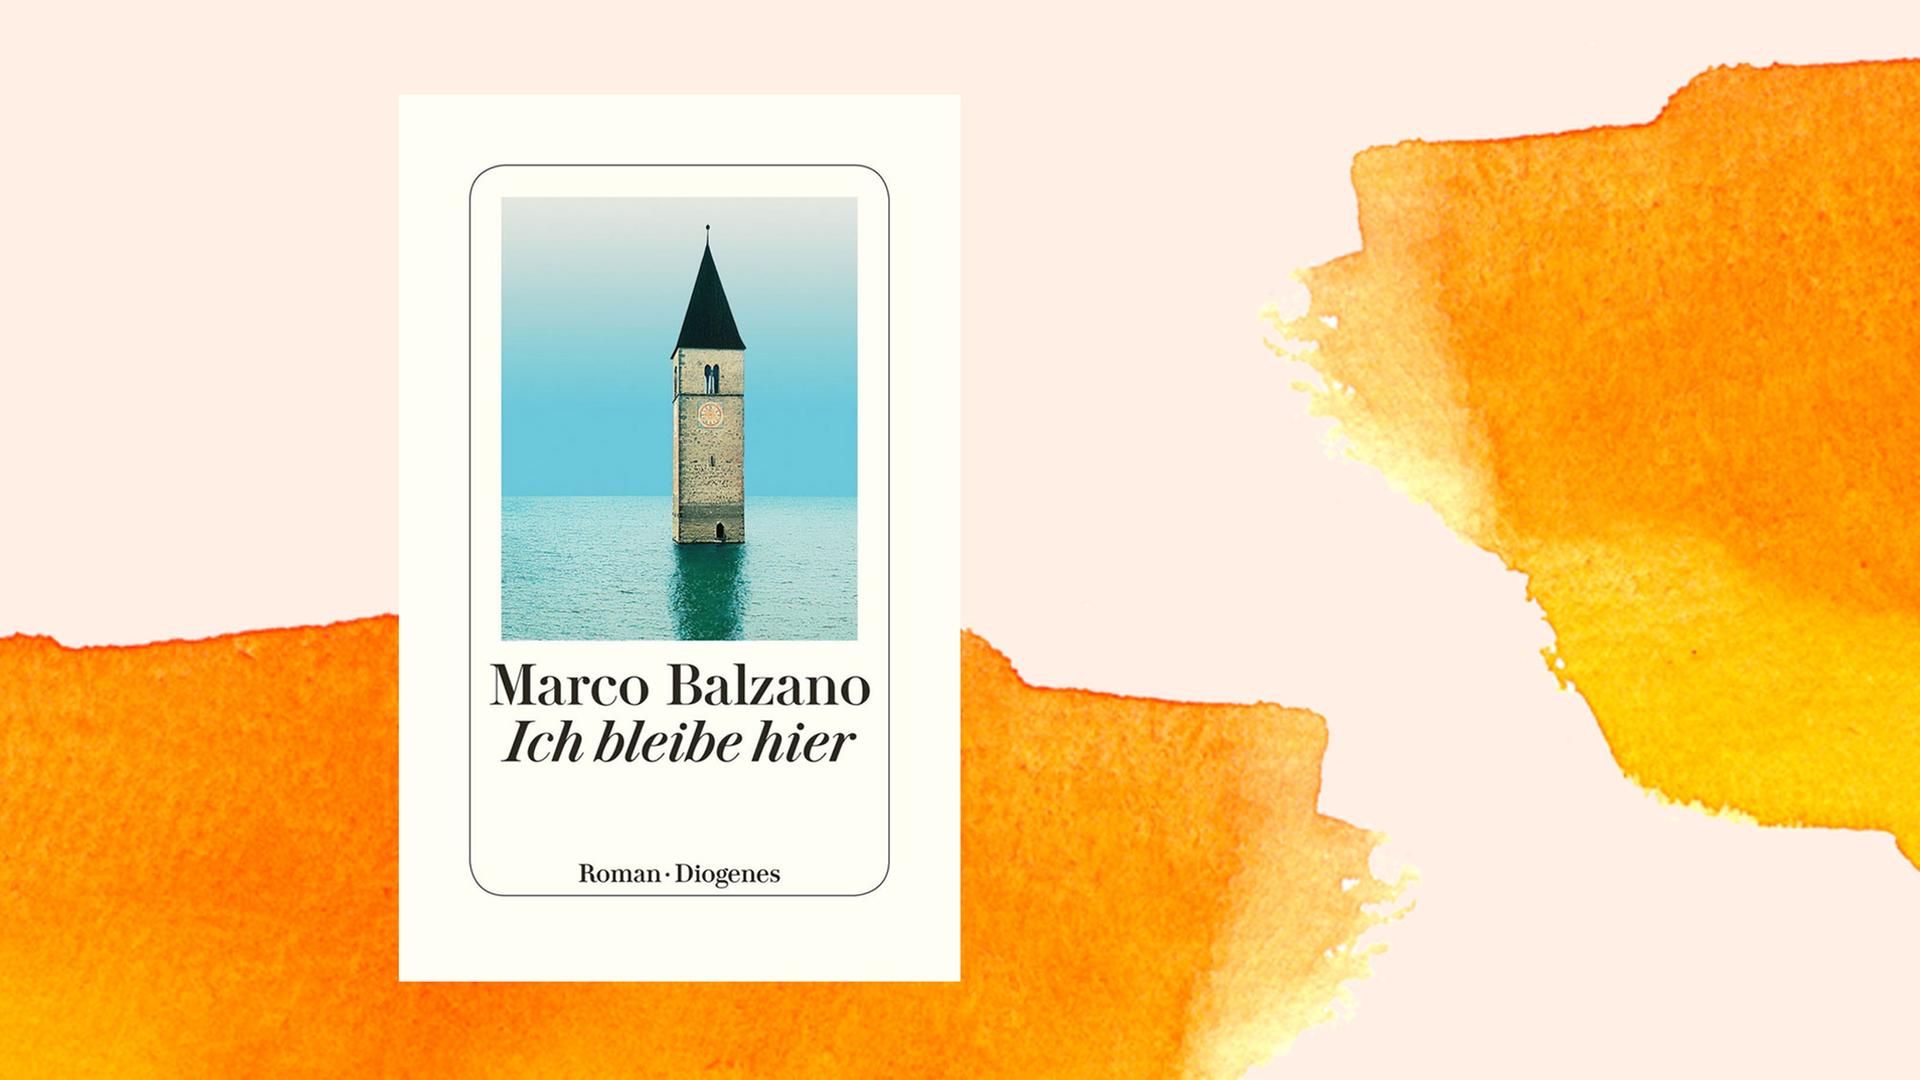 Buchcover des Romans "Ich bleibe hier" von Marco Balzano